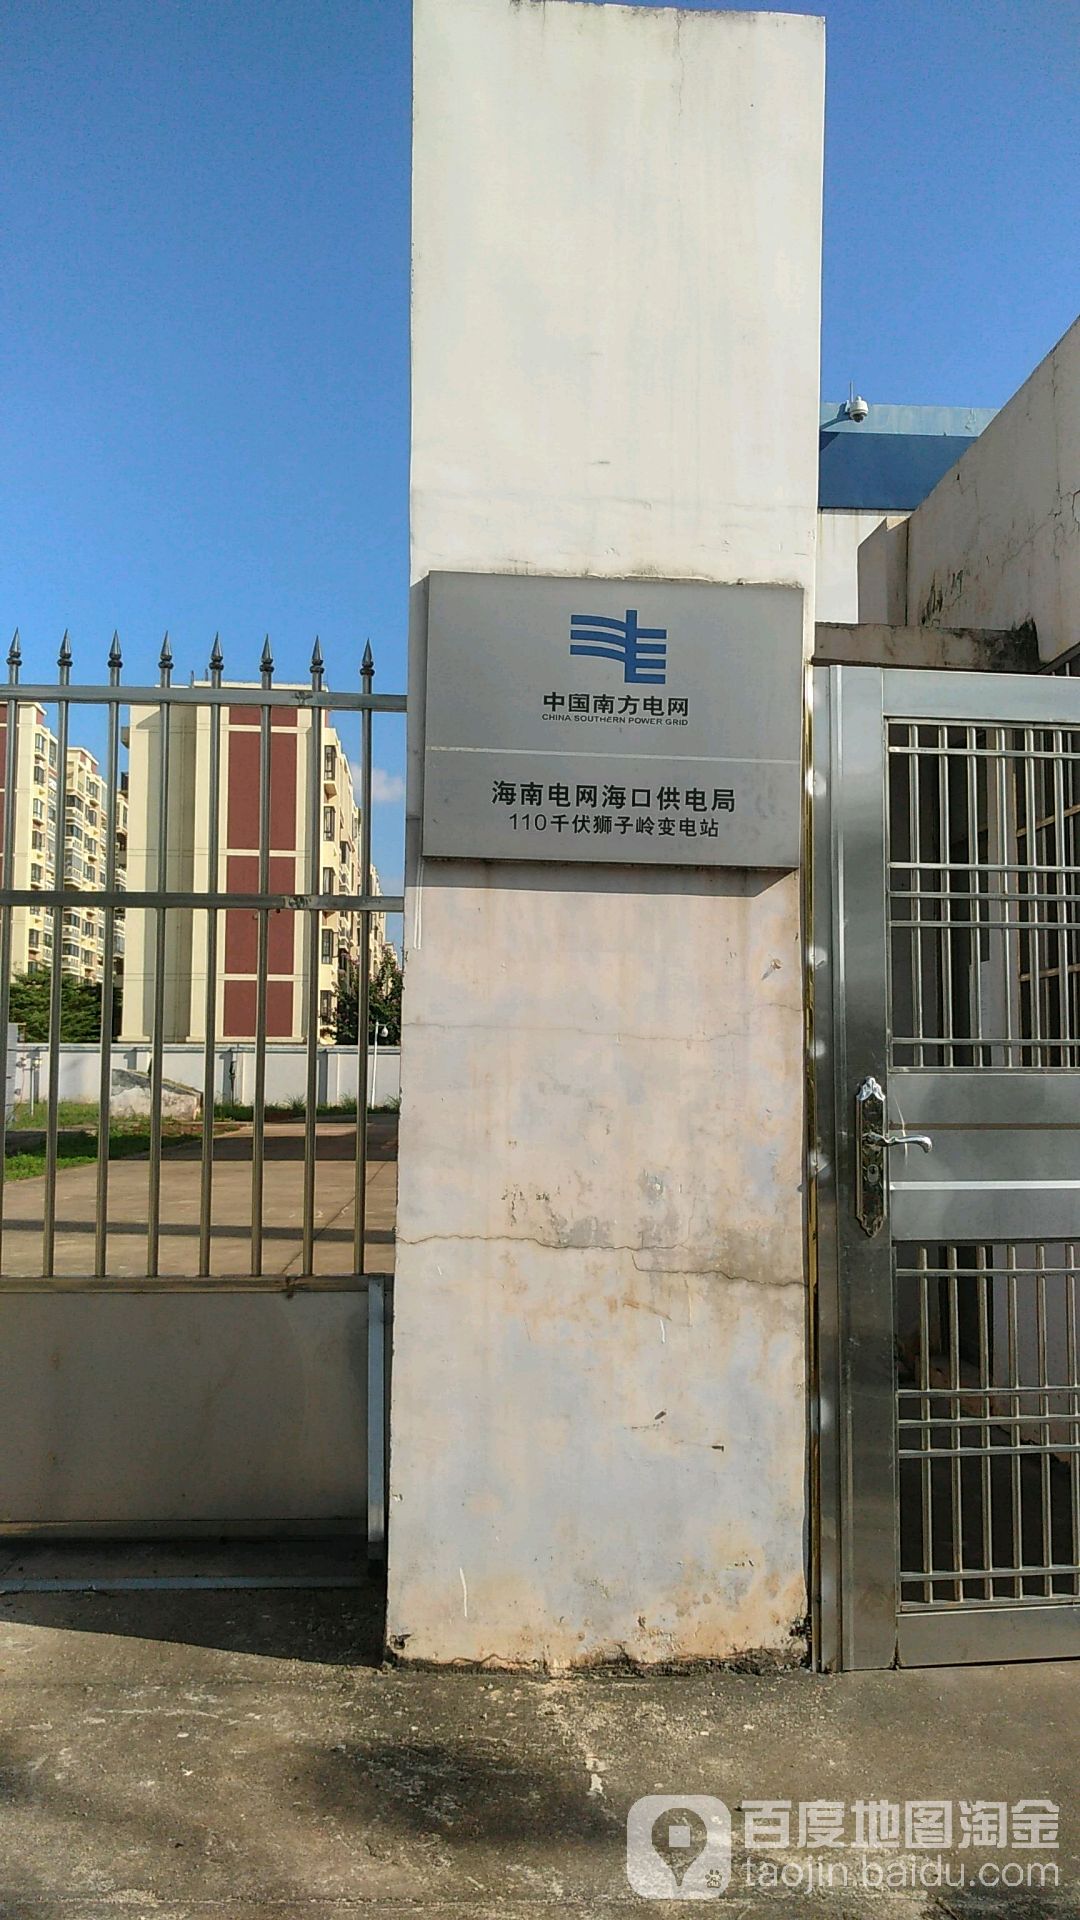 天津市东丽区加快电网建设 服务经济社会发展